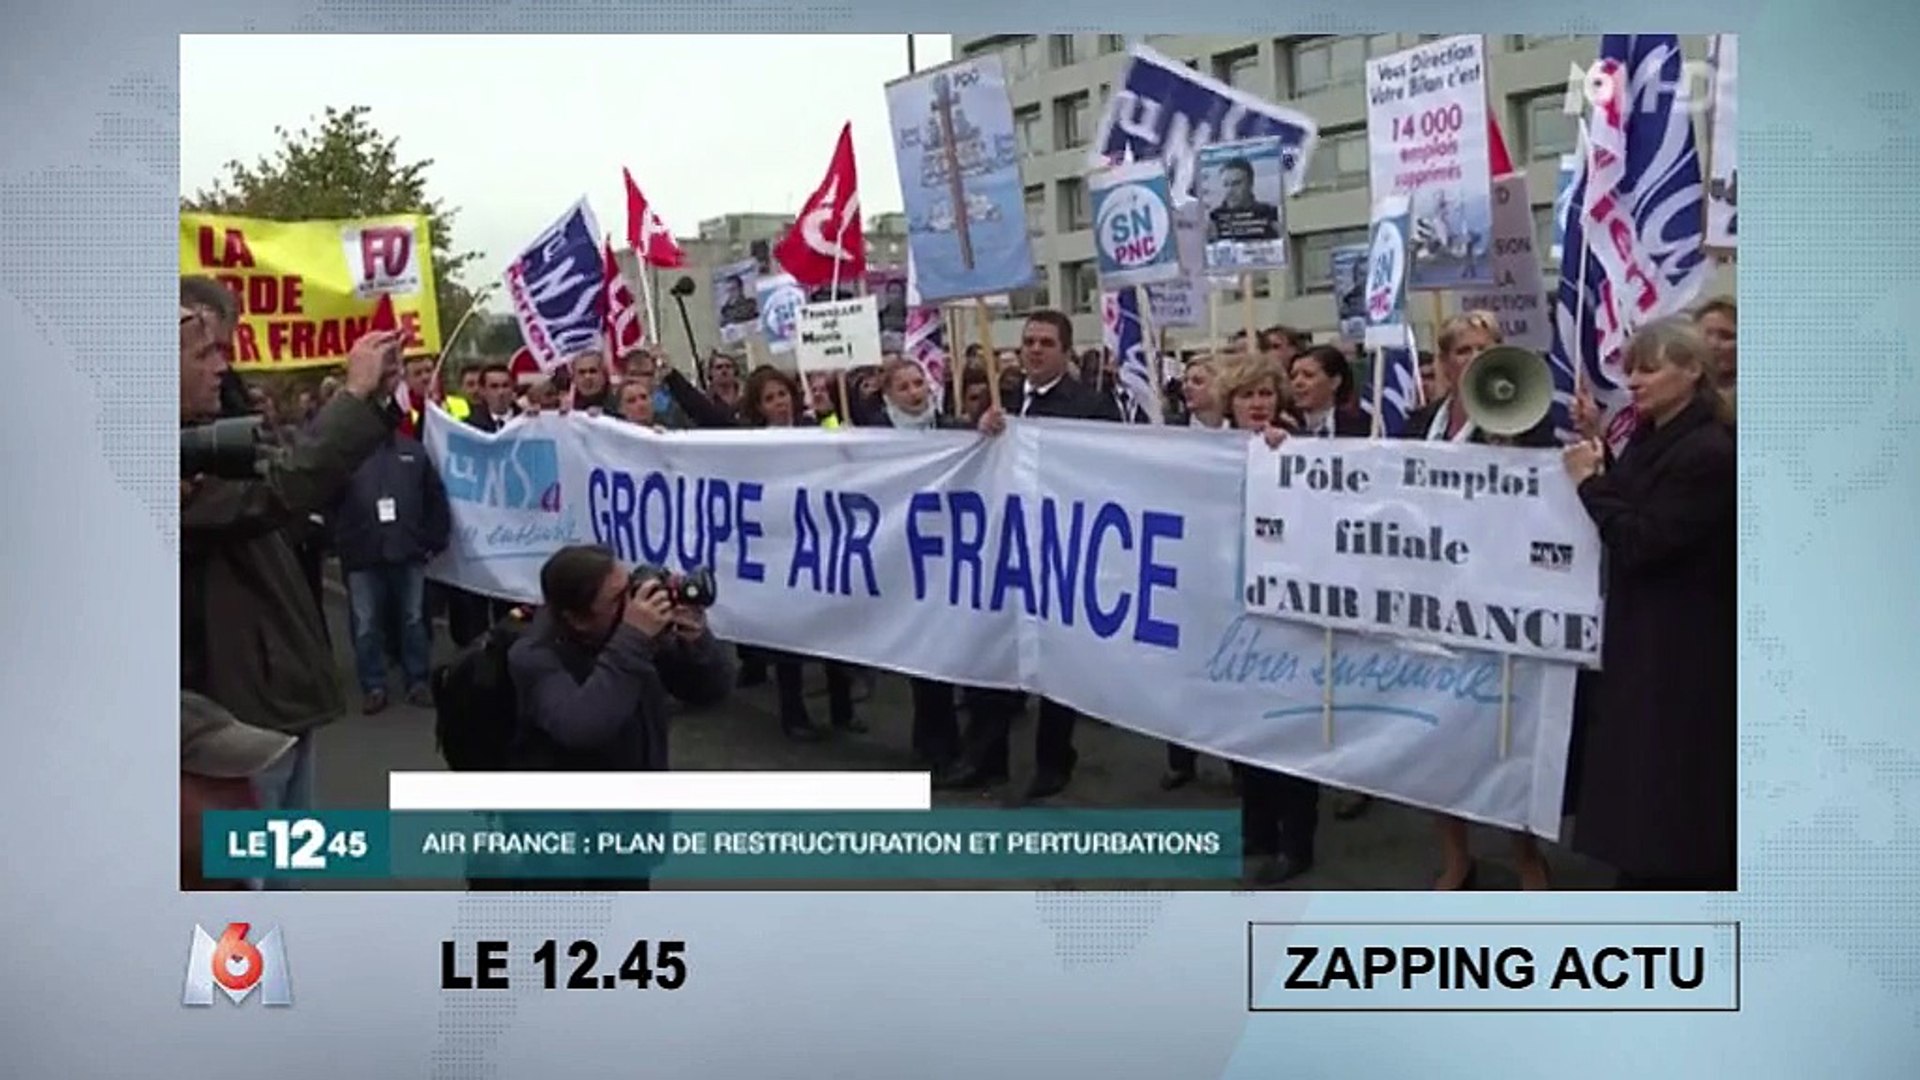 Le DRH d'Air France se fait arracher la chemise par des salariés en colère  - Vidéo Dailymotion